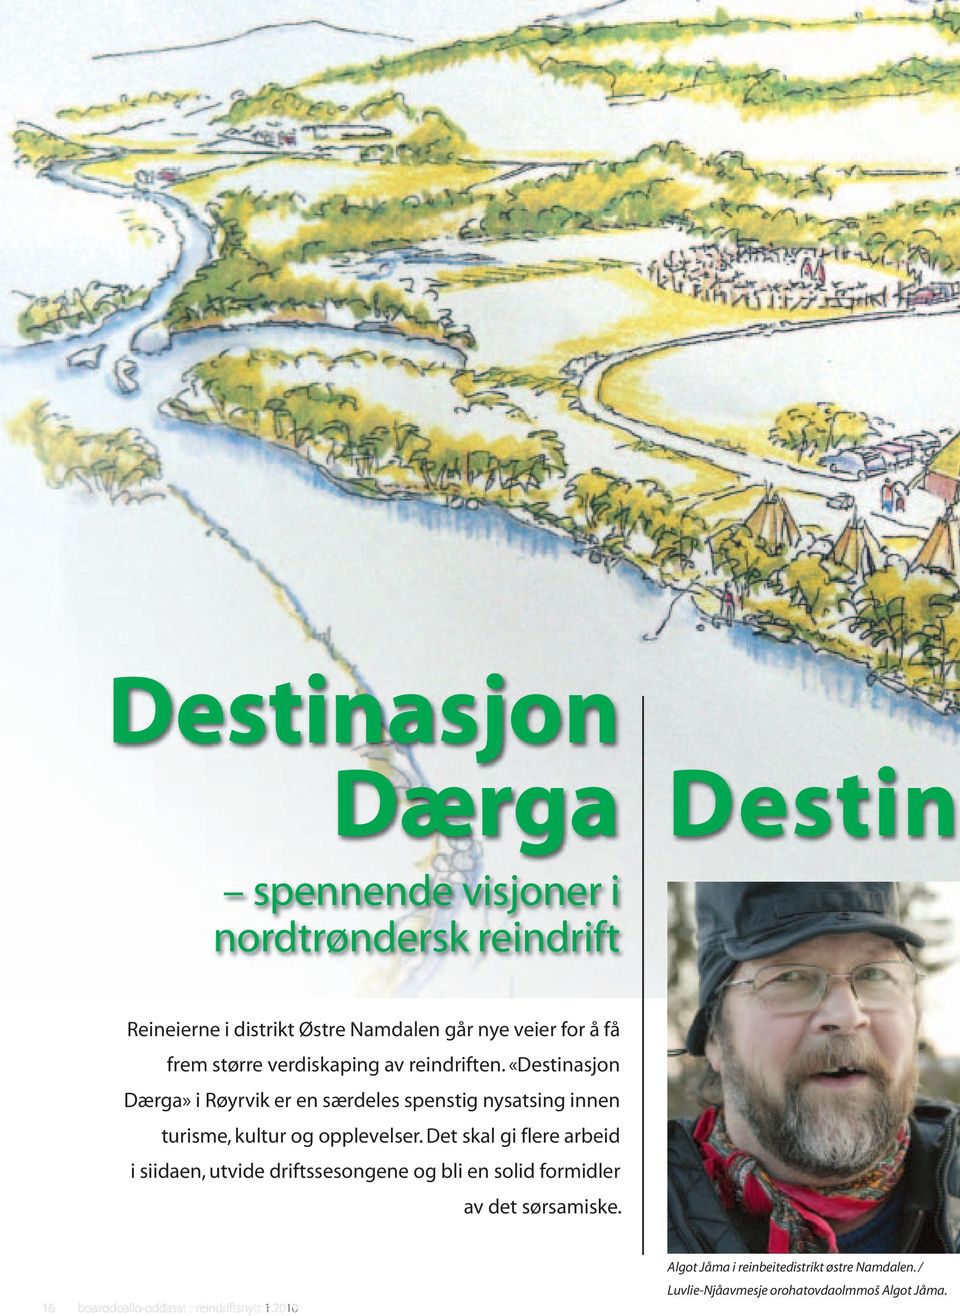 «Destinasjon Dærga» i Røyrvik er en særdeles spenstig nysatsing innen turisme, kultur og opplevelser.